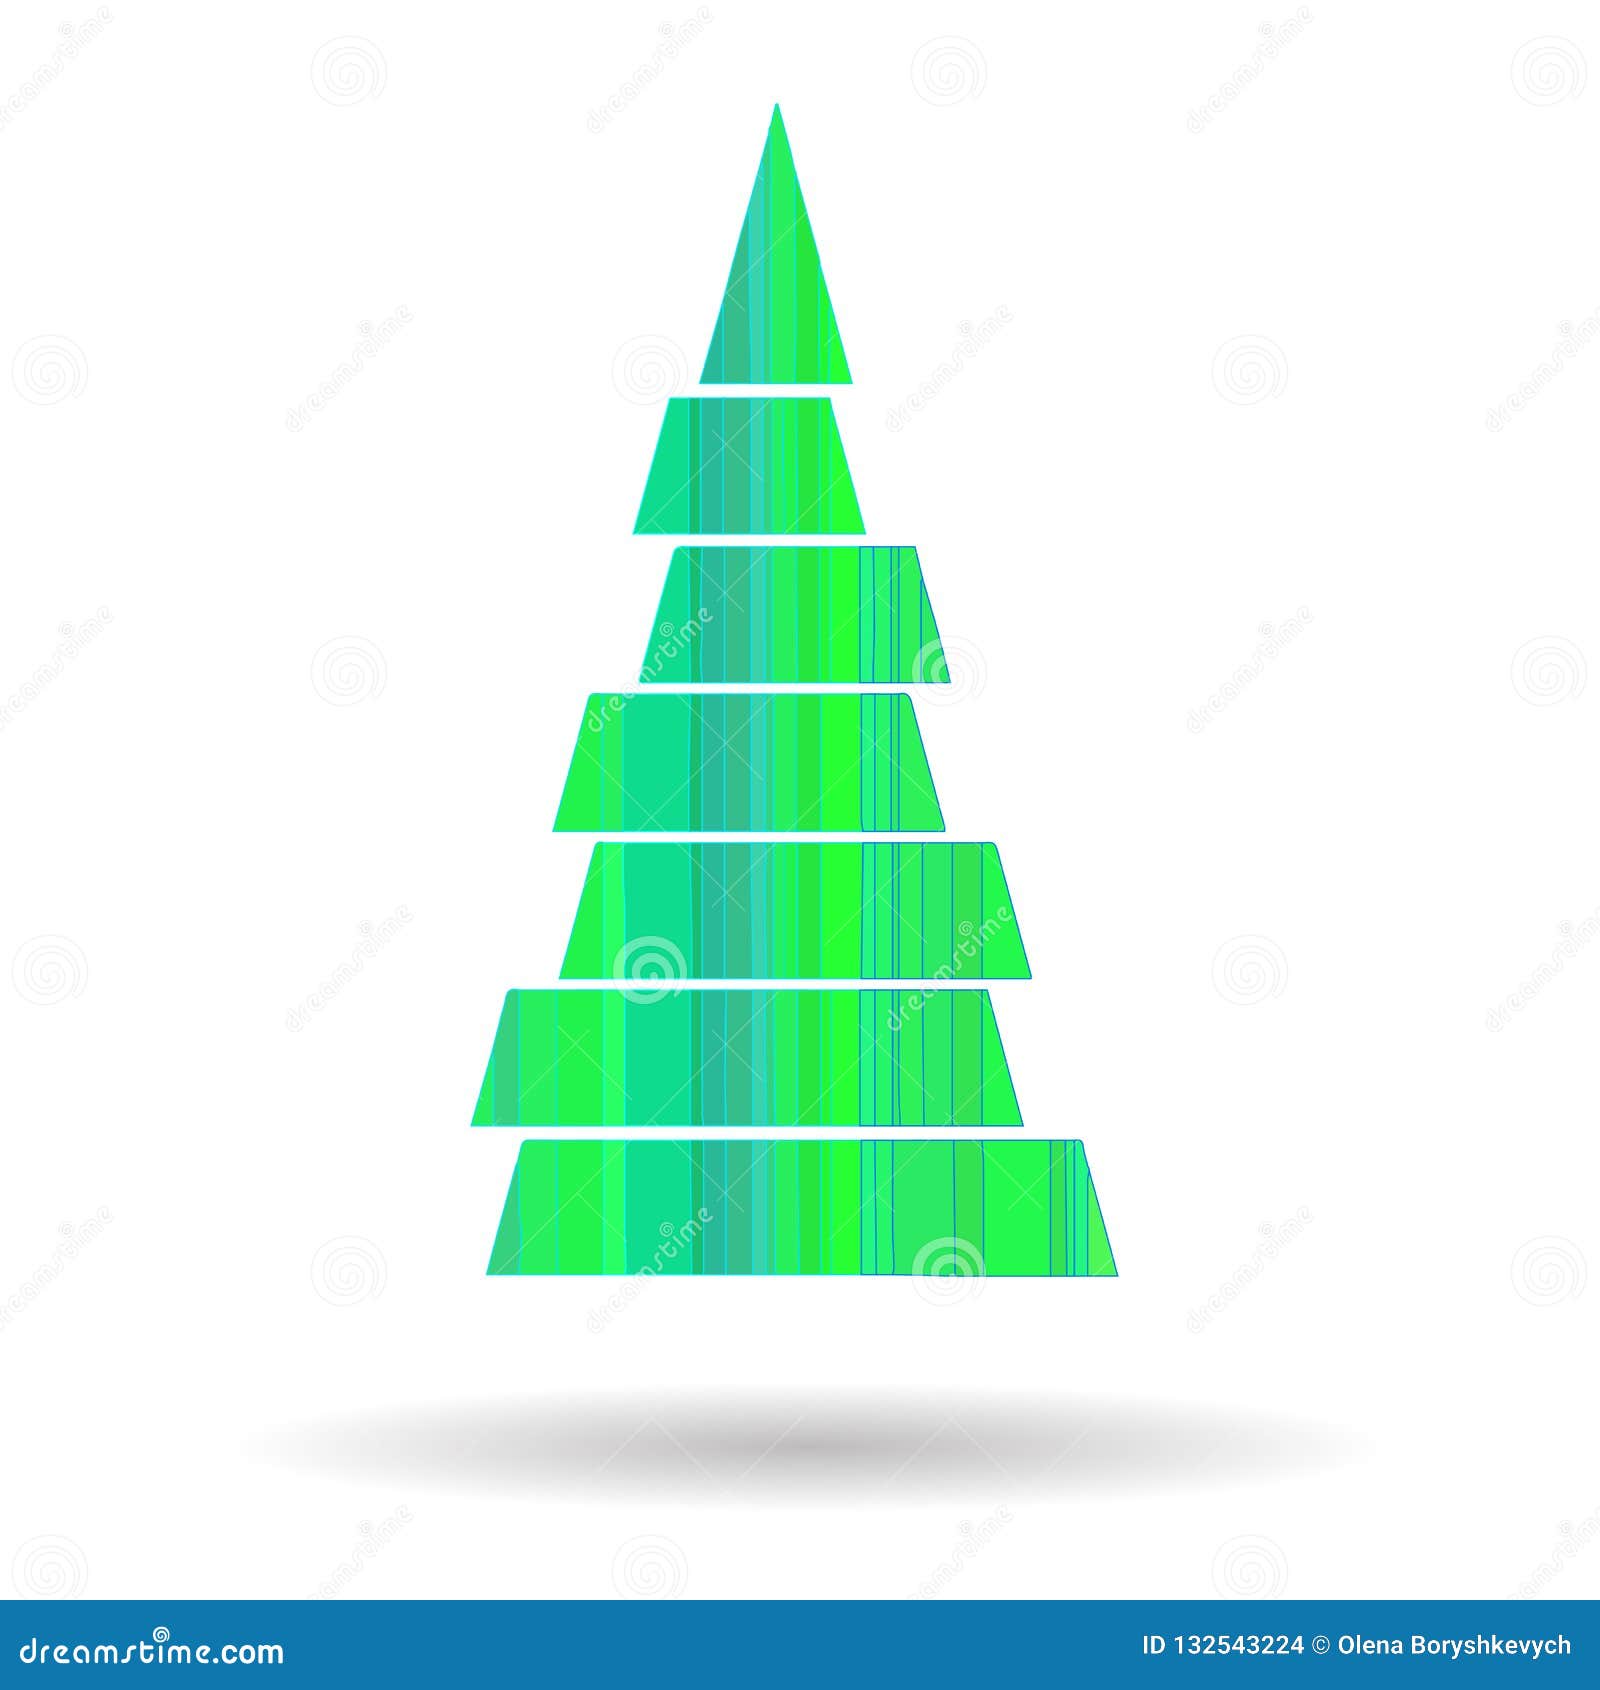 Disegni Geometrici Di Natale.Un Immagine Di Un Albero Di Natale Stilizzato Dalle Forme Geometriche Verdi E Blu Su Un Fondo Bianco Illustrazione Vettoriale Illustrazione Di Concetto Idea 132543224